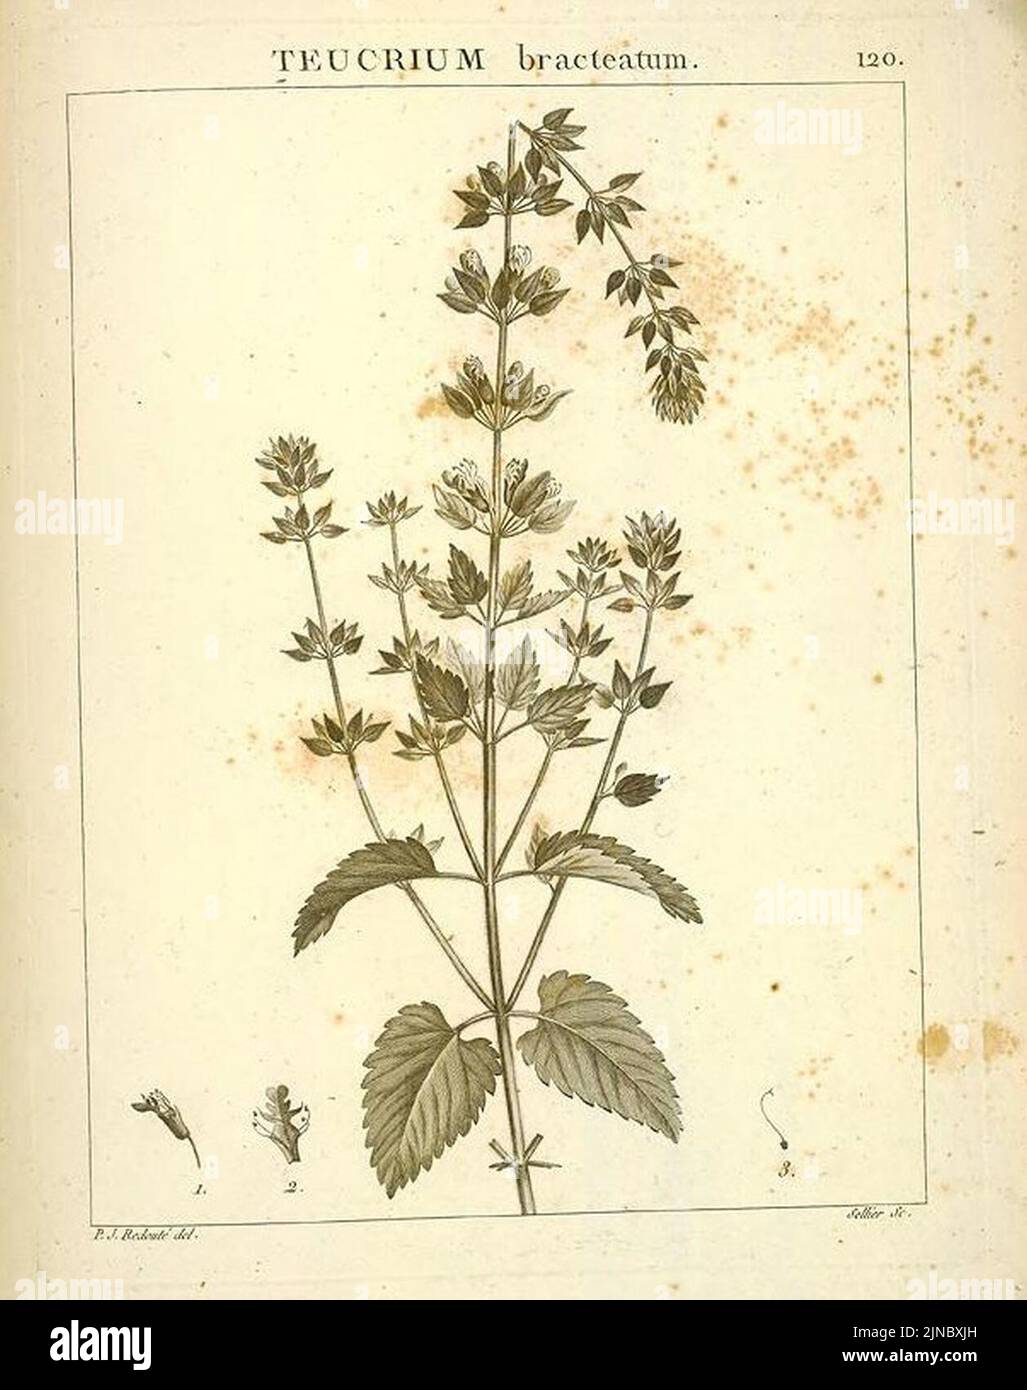 Teucrium bracteatum Desfontaines 1798 Stock Photo